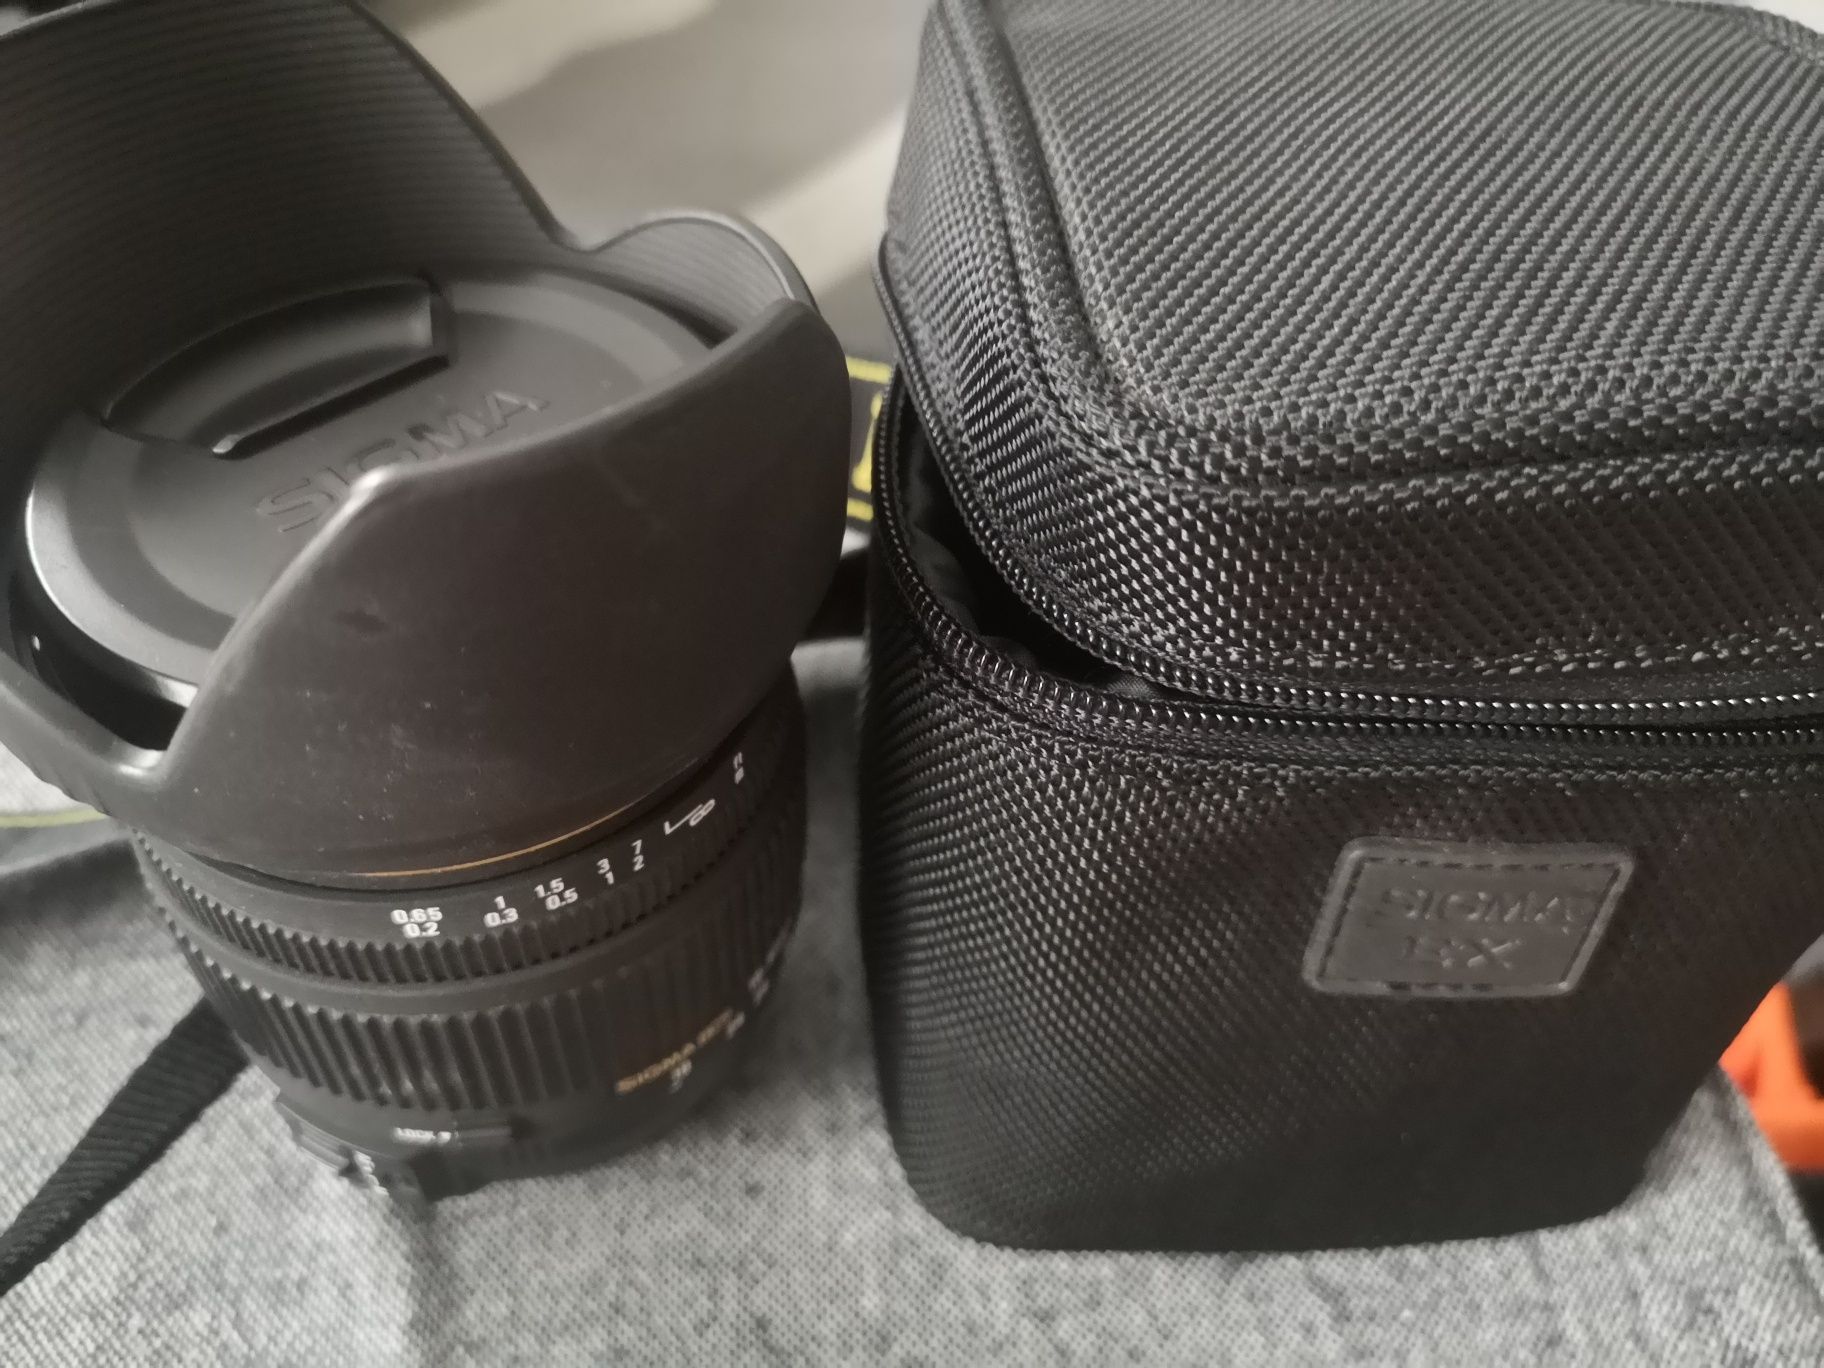 Aparat Nikon D300 Obiektyw Sigma 18-55 2.8 zestaw